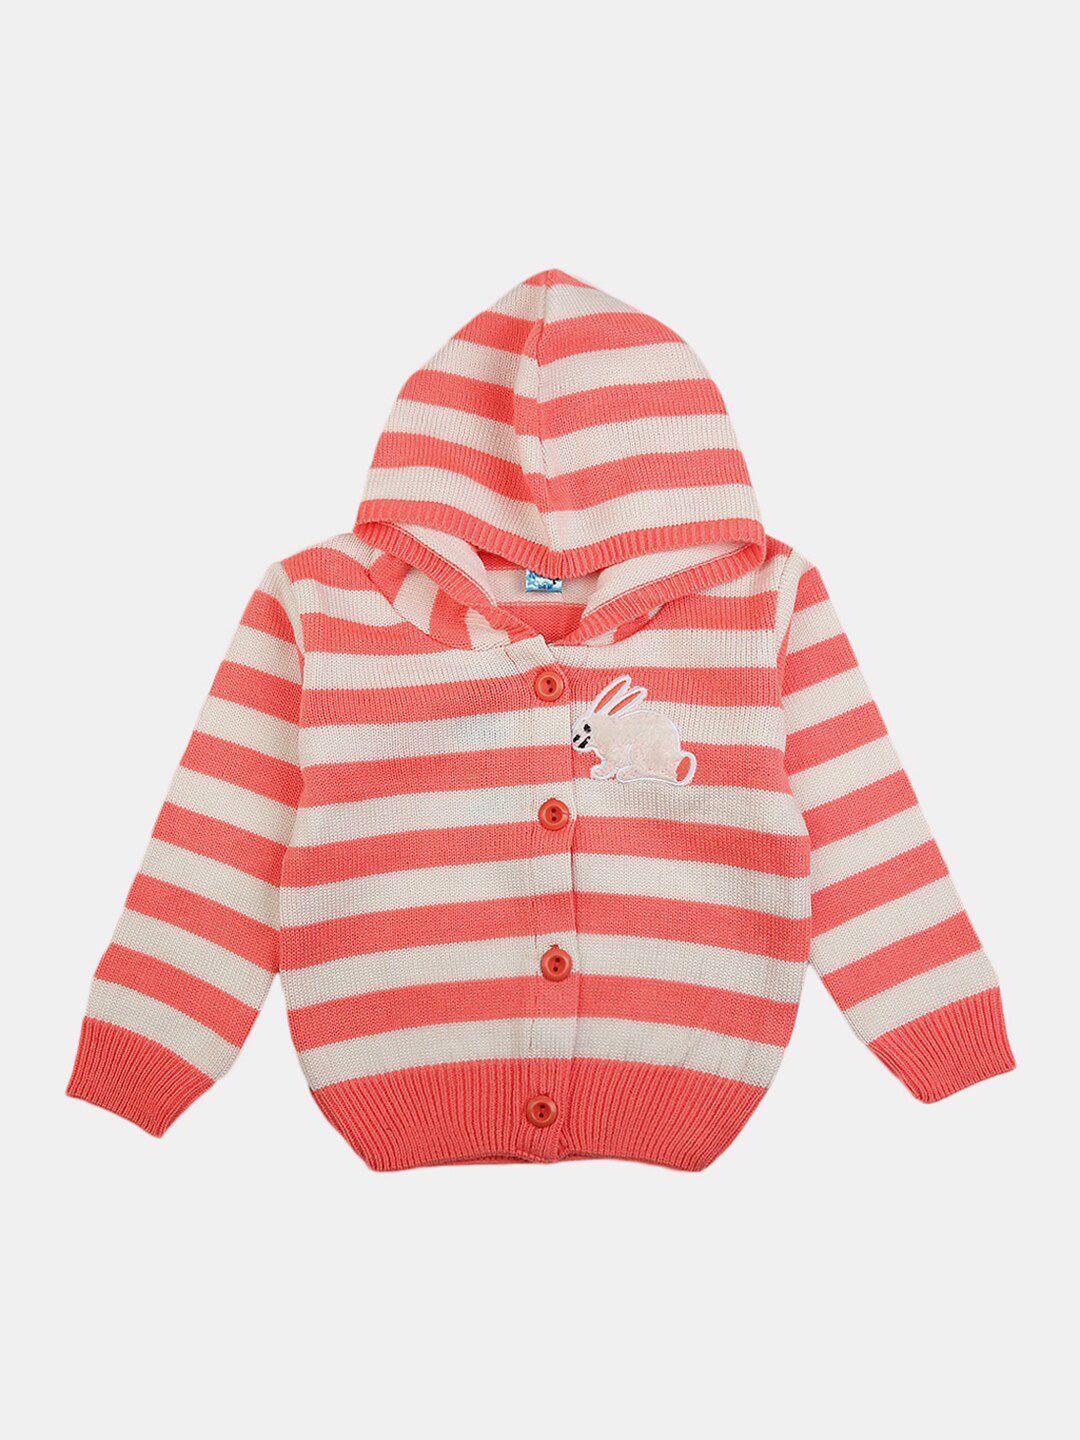 v-mart kids pink & white striped hooded pullover